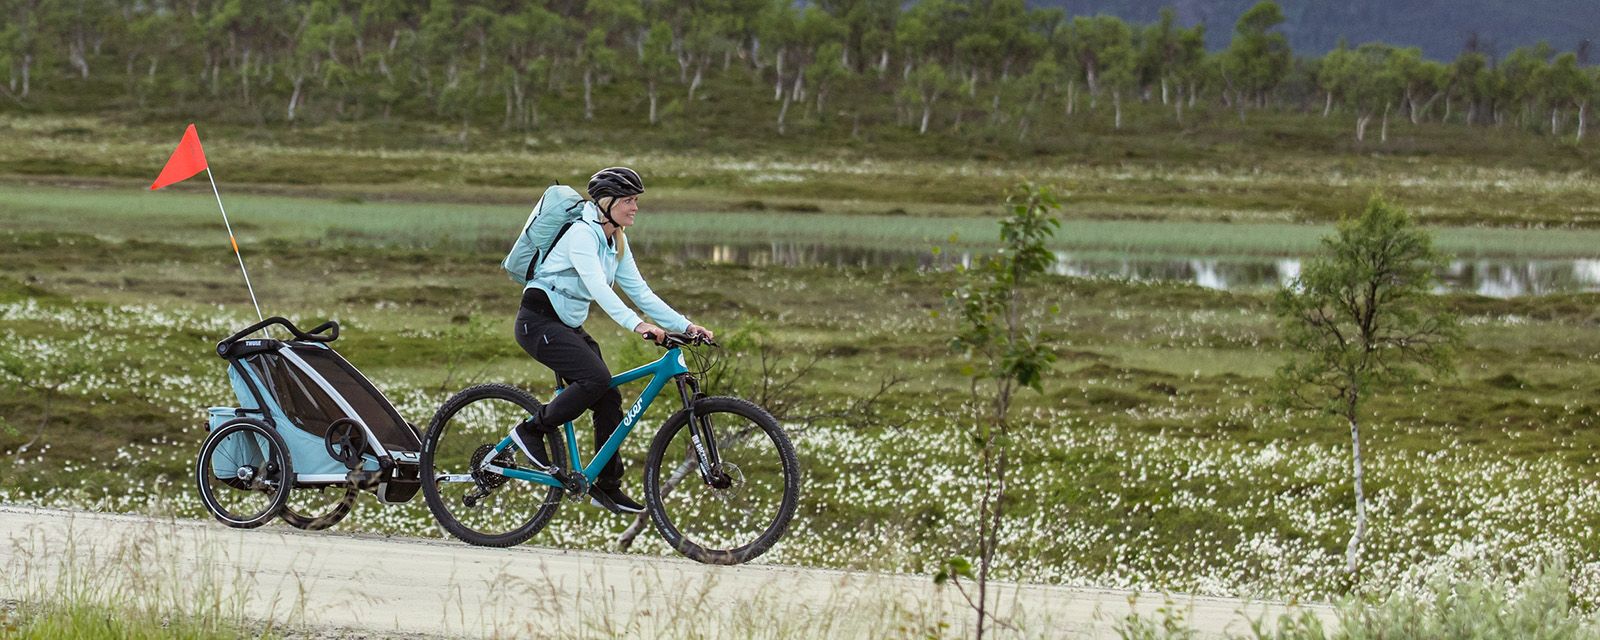 Une femme traine une remorque pour vélo Thule Chariot Cross bleue dans un champ.